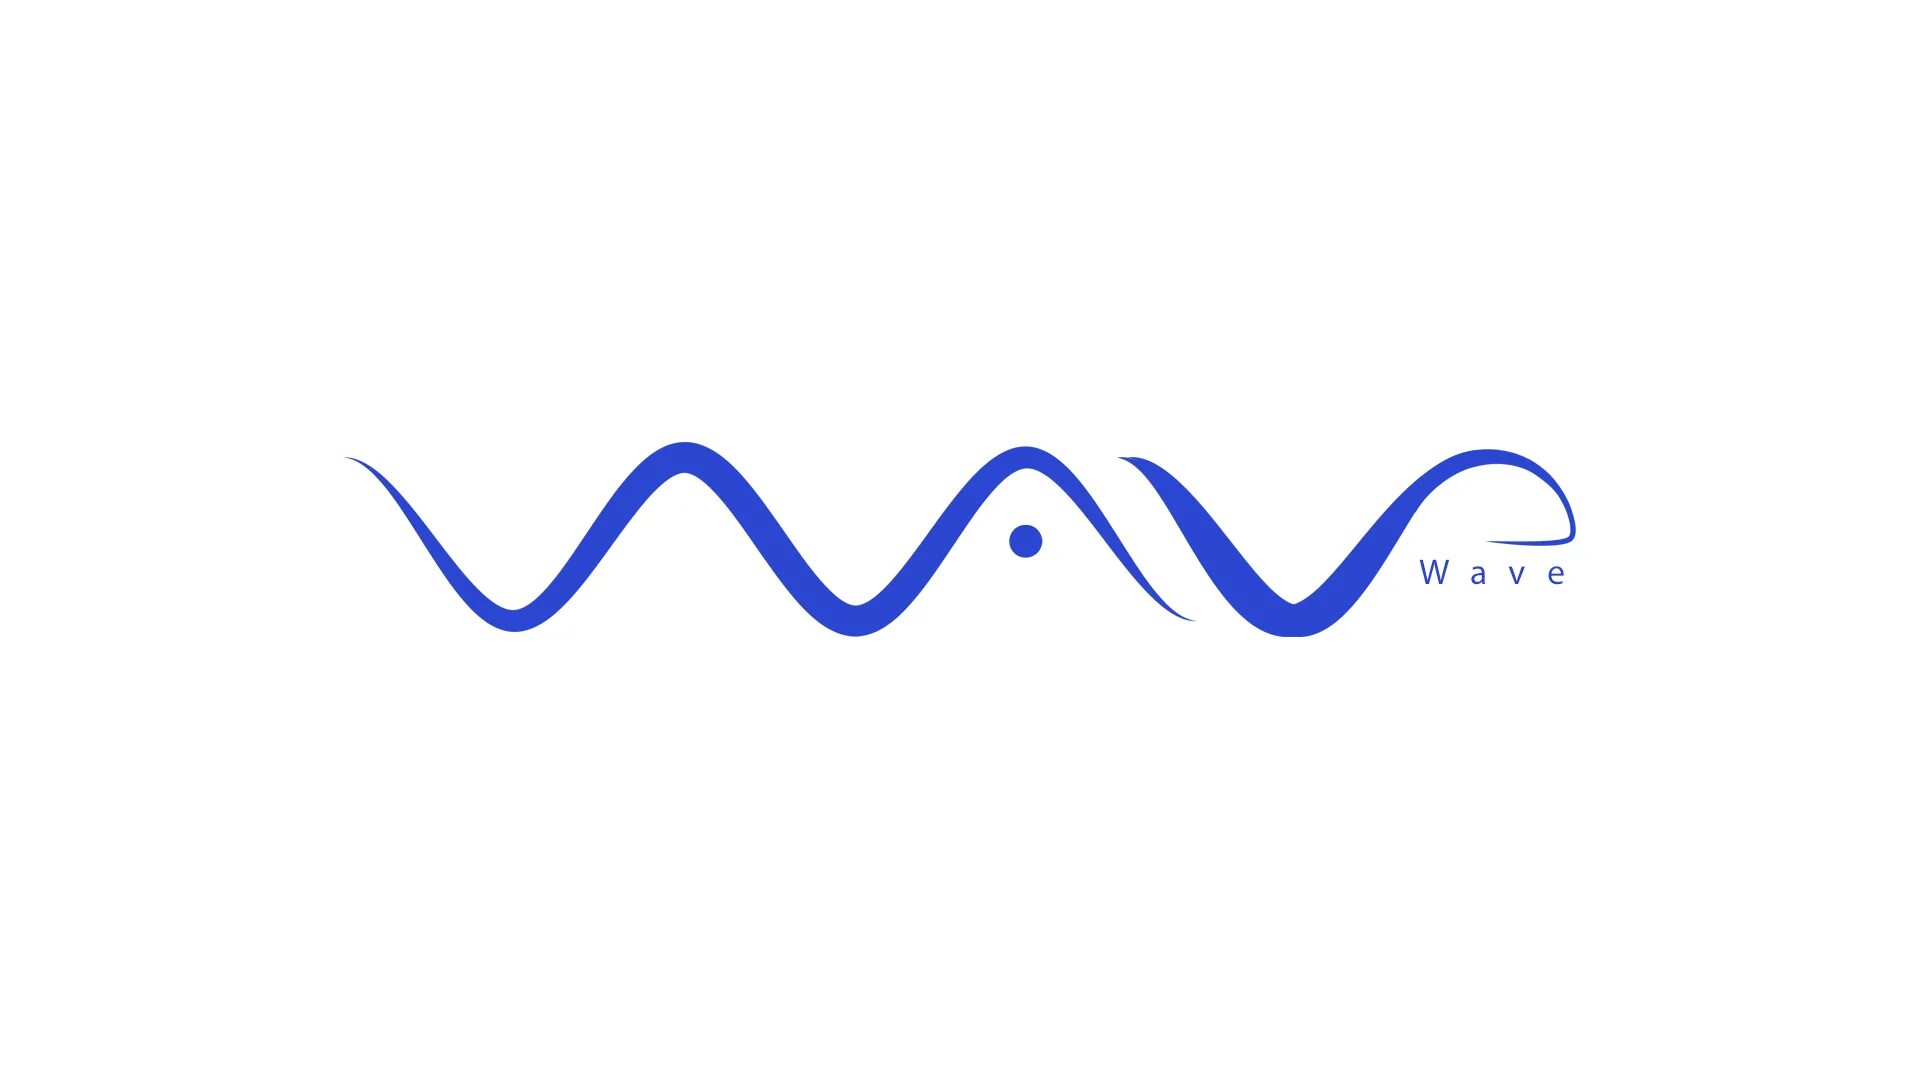 Spins waves waves. Эмблема волна. Логотип в виде волны. Волна вектор. Стилизованная волна для логотипа.